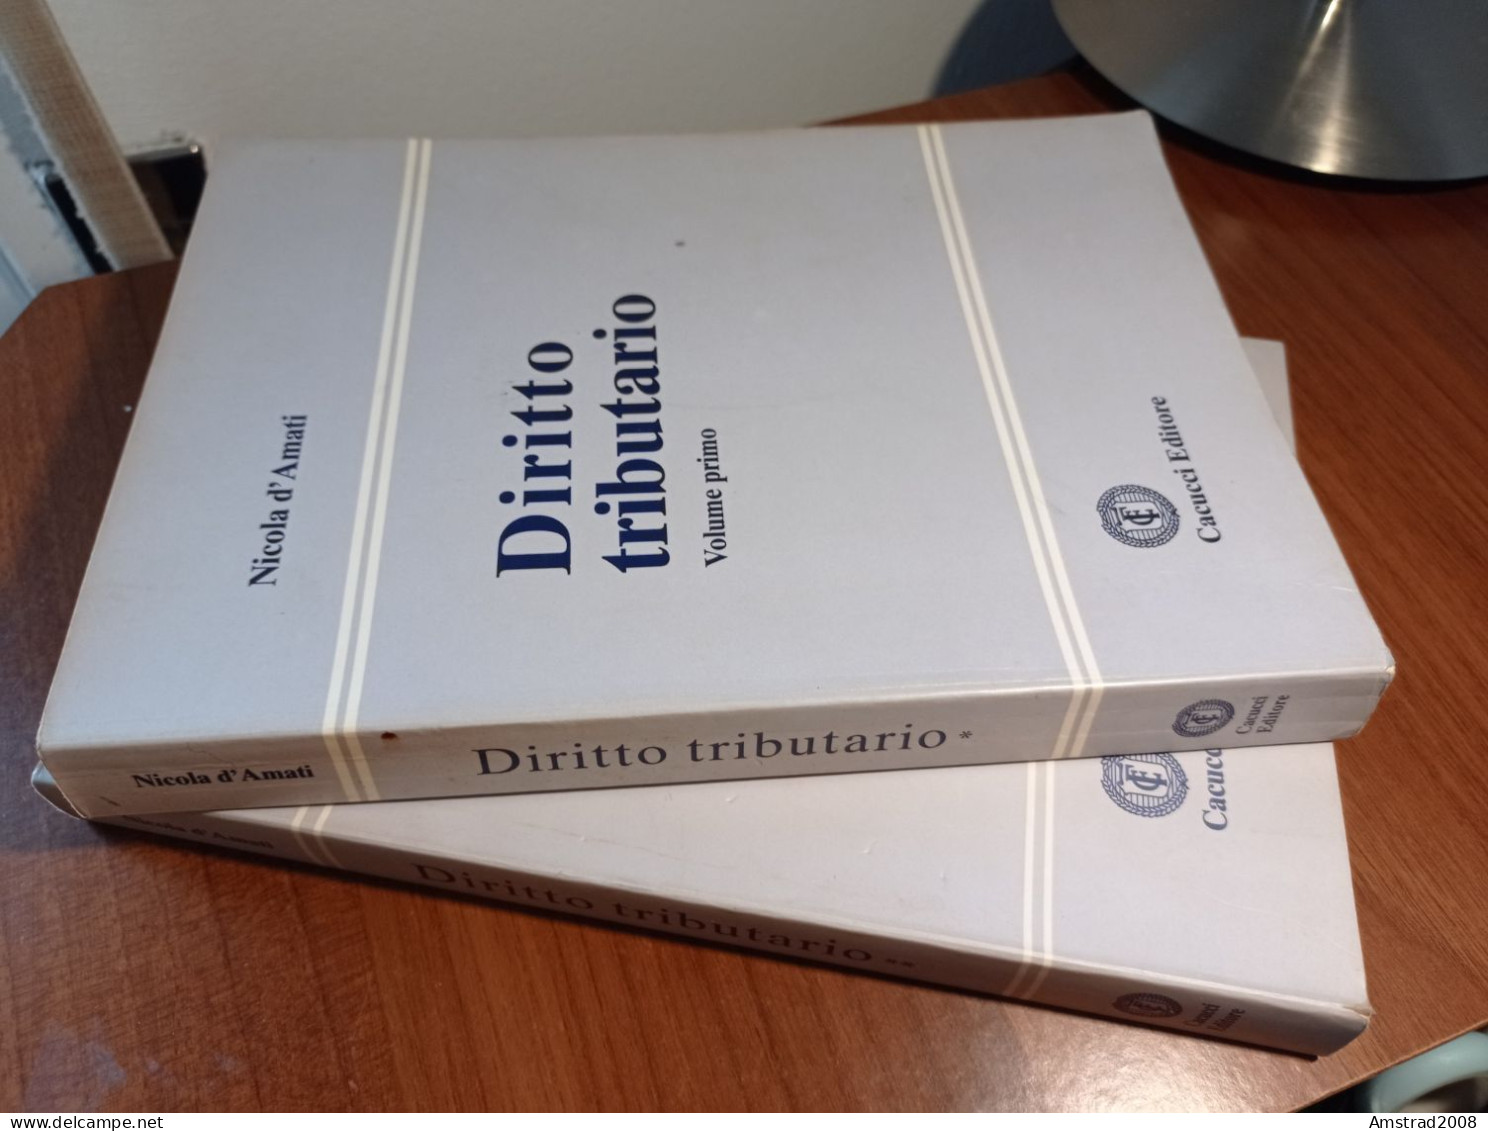 DIRITTO TRIBUTARIO VOLUME PRIMO + SECONDO DI NICOLA D'AMATI - LIBRO X DIRITTO GIURISPRUDENZA